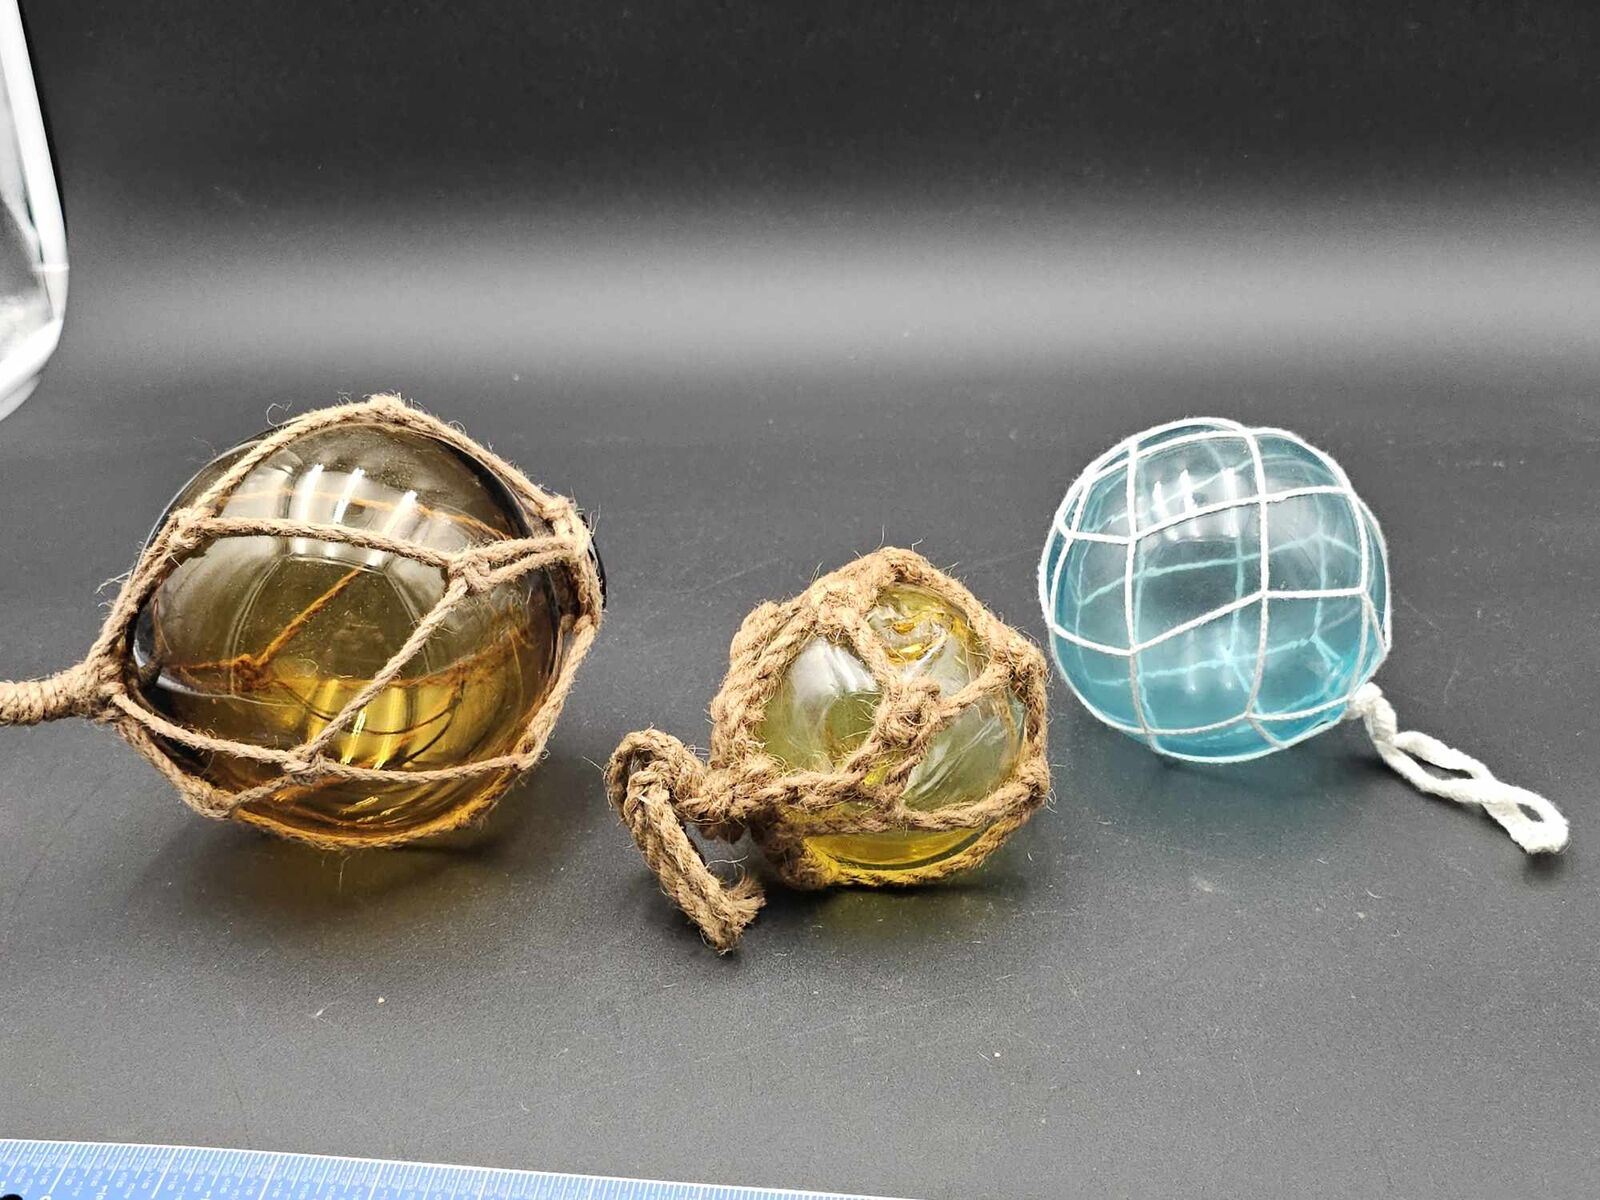 Lot of 3 Decorative Glass Fishing Float Buoy Balls Aqua, Yellow & Amber W/ Nets